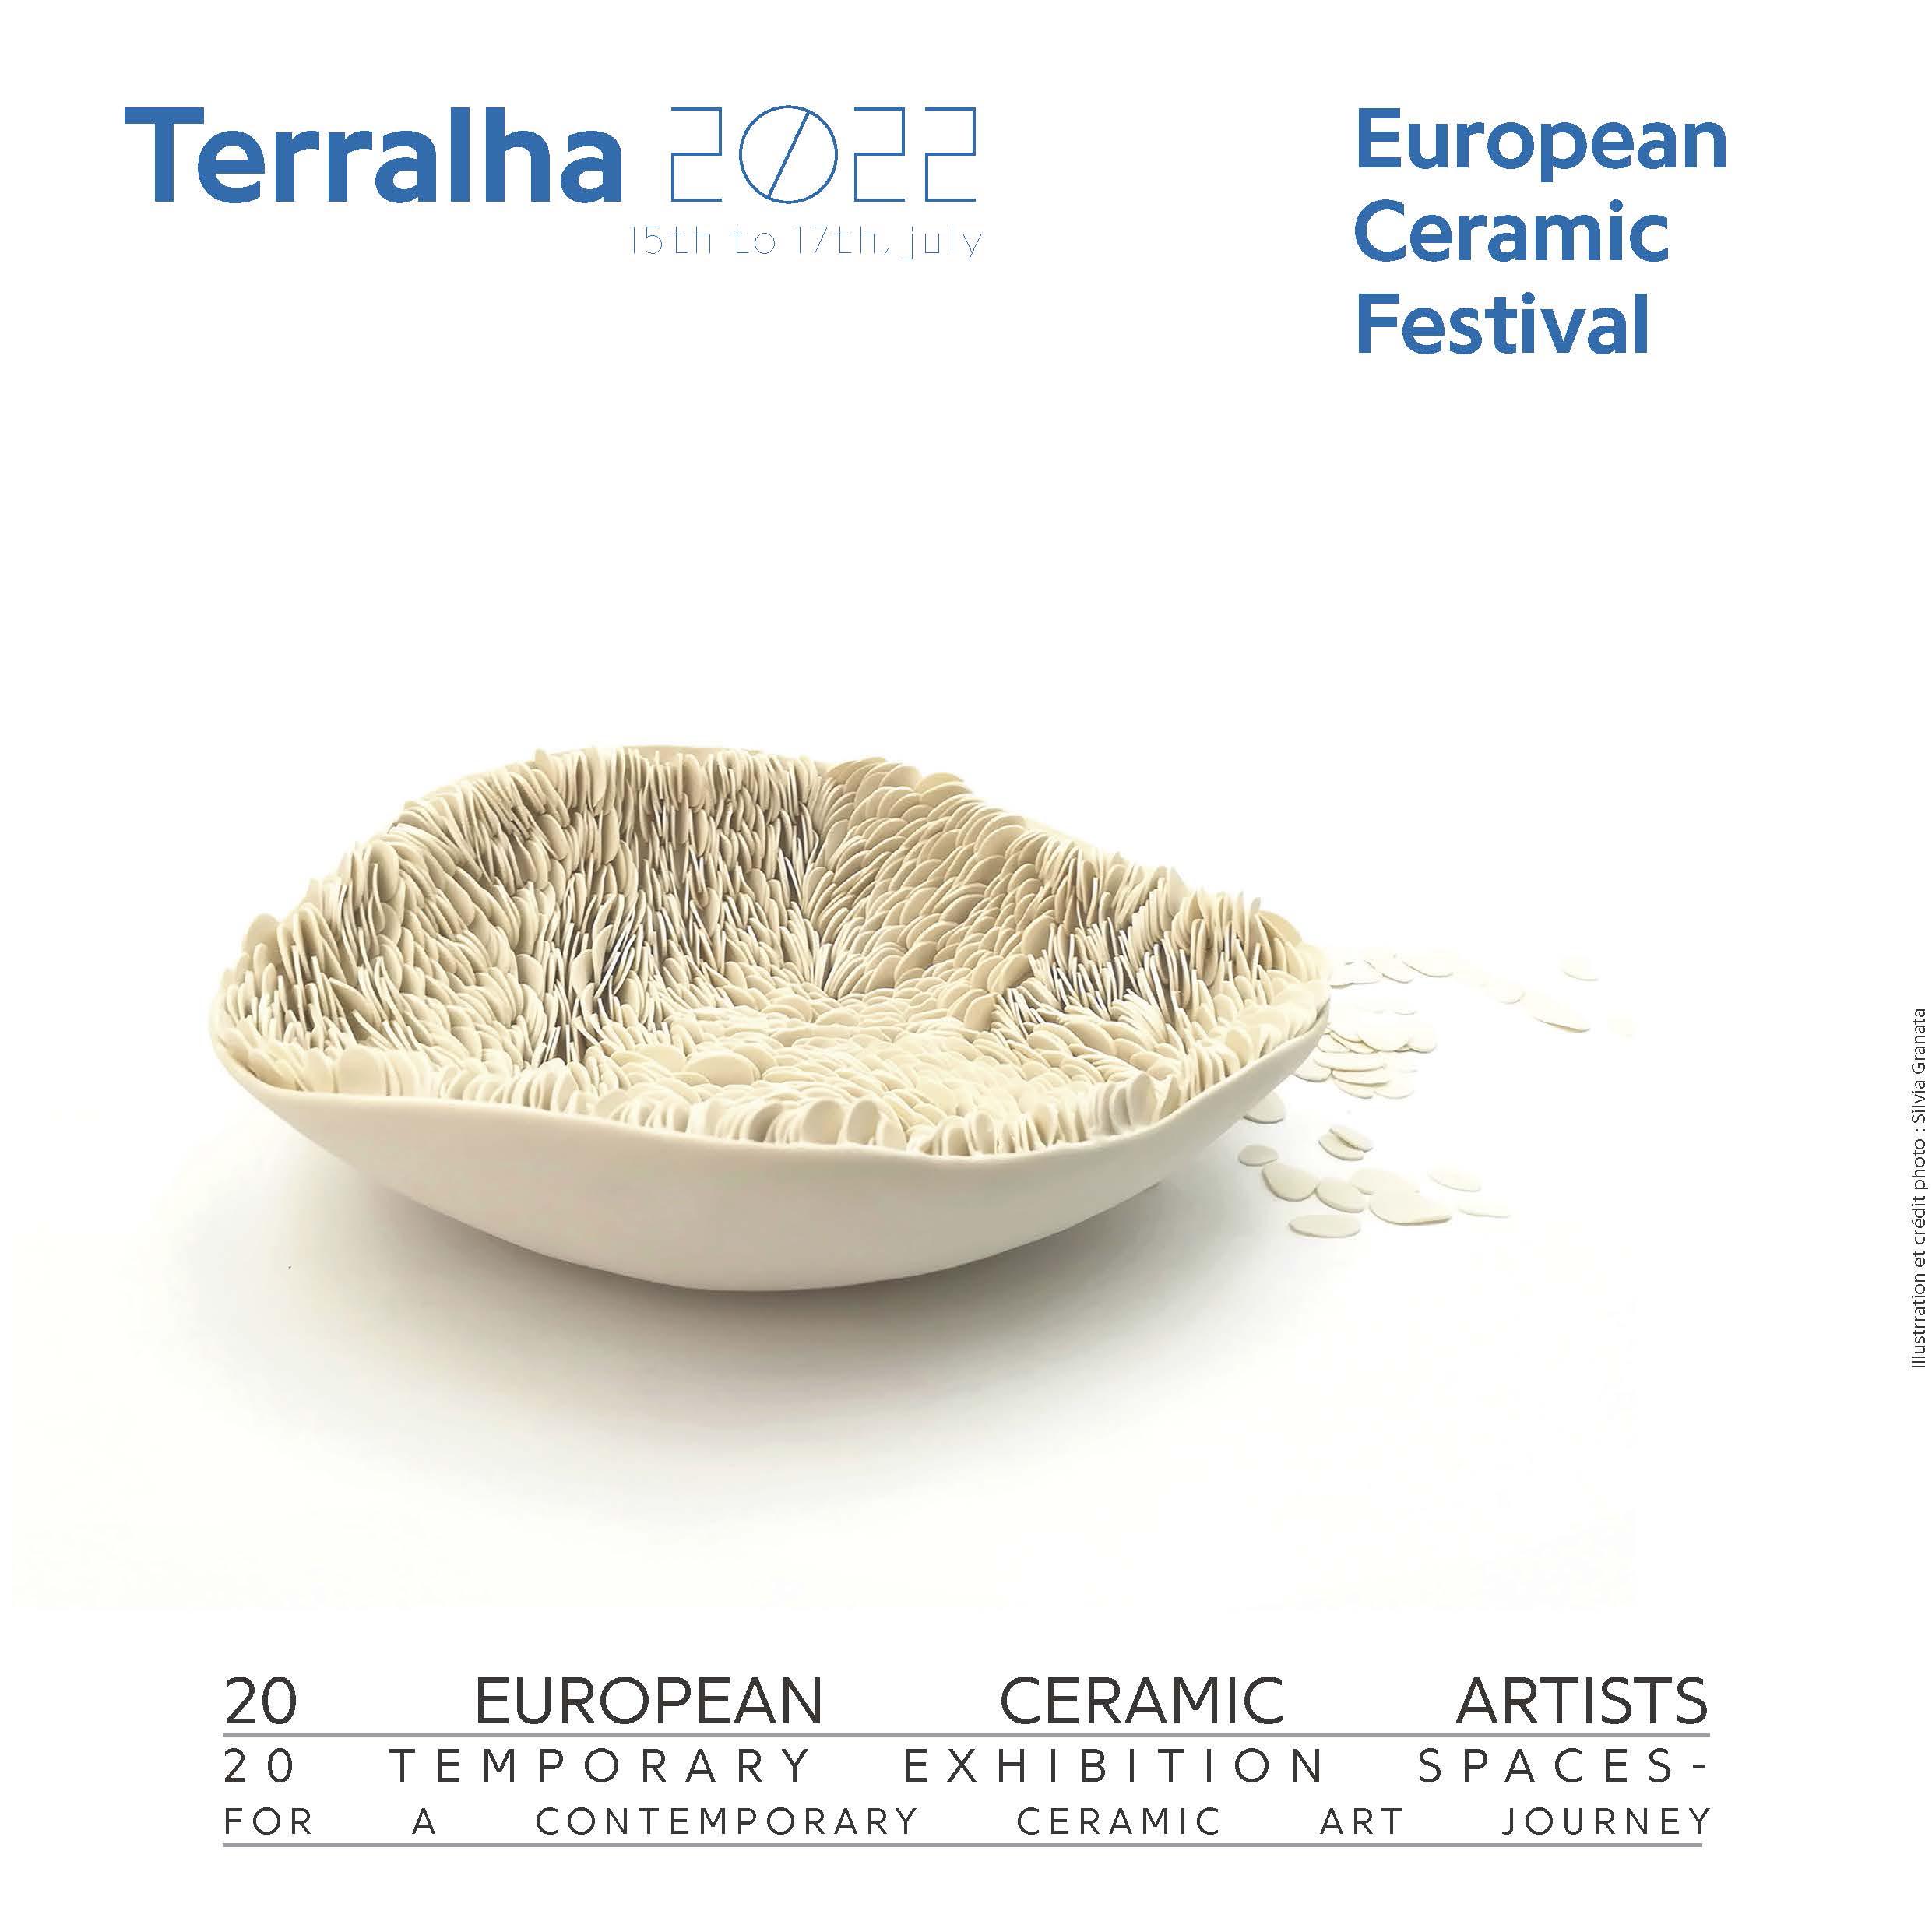 European Ceramic Festival. Terralha 2022